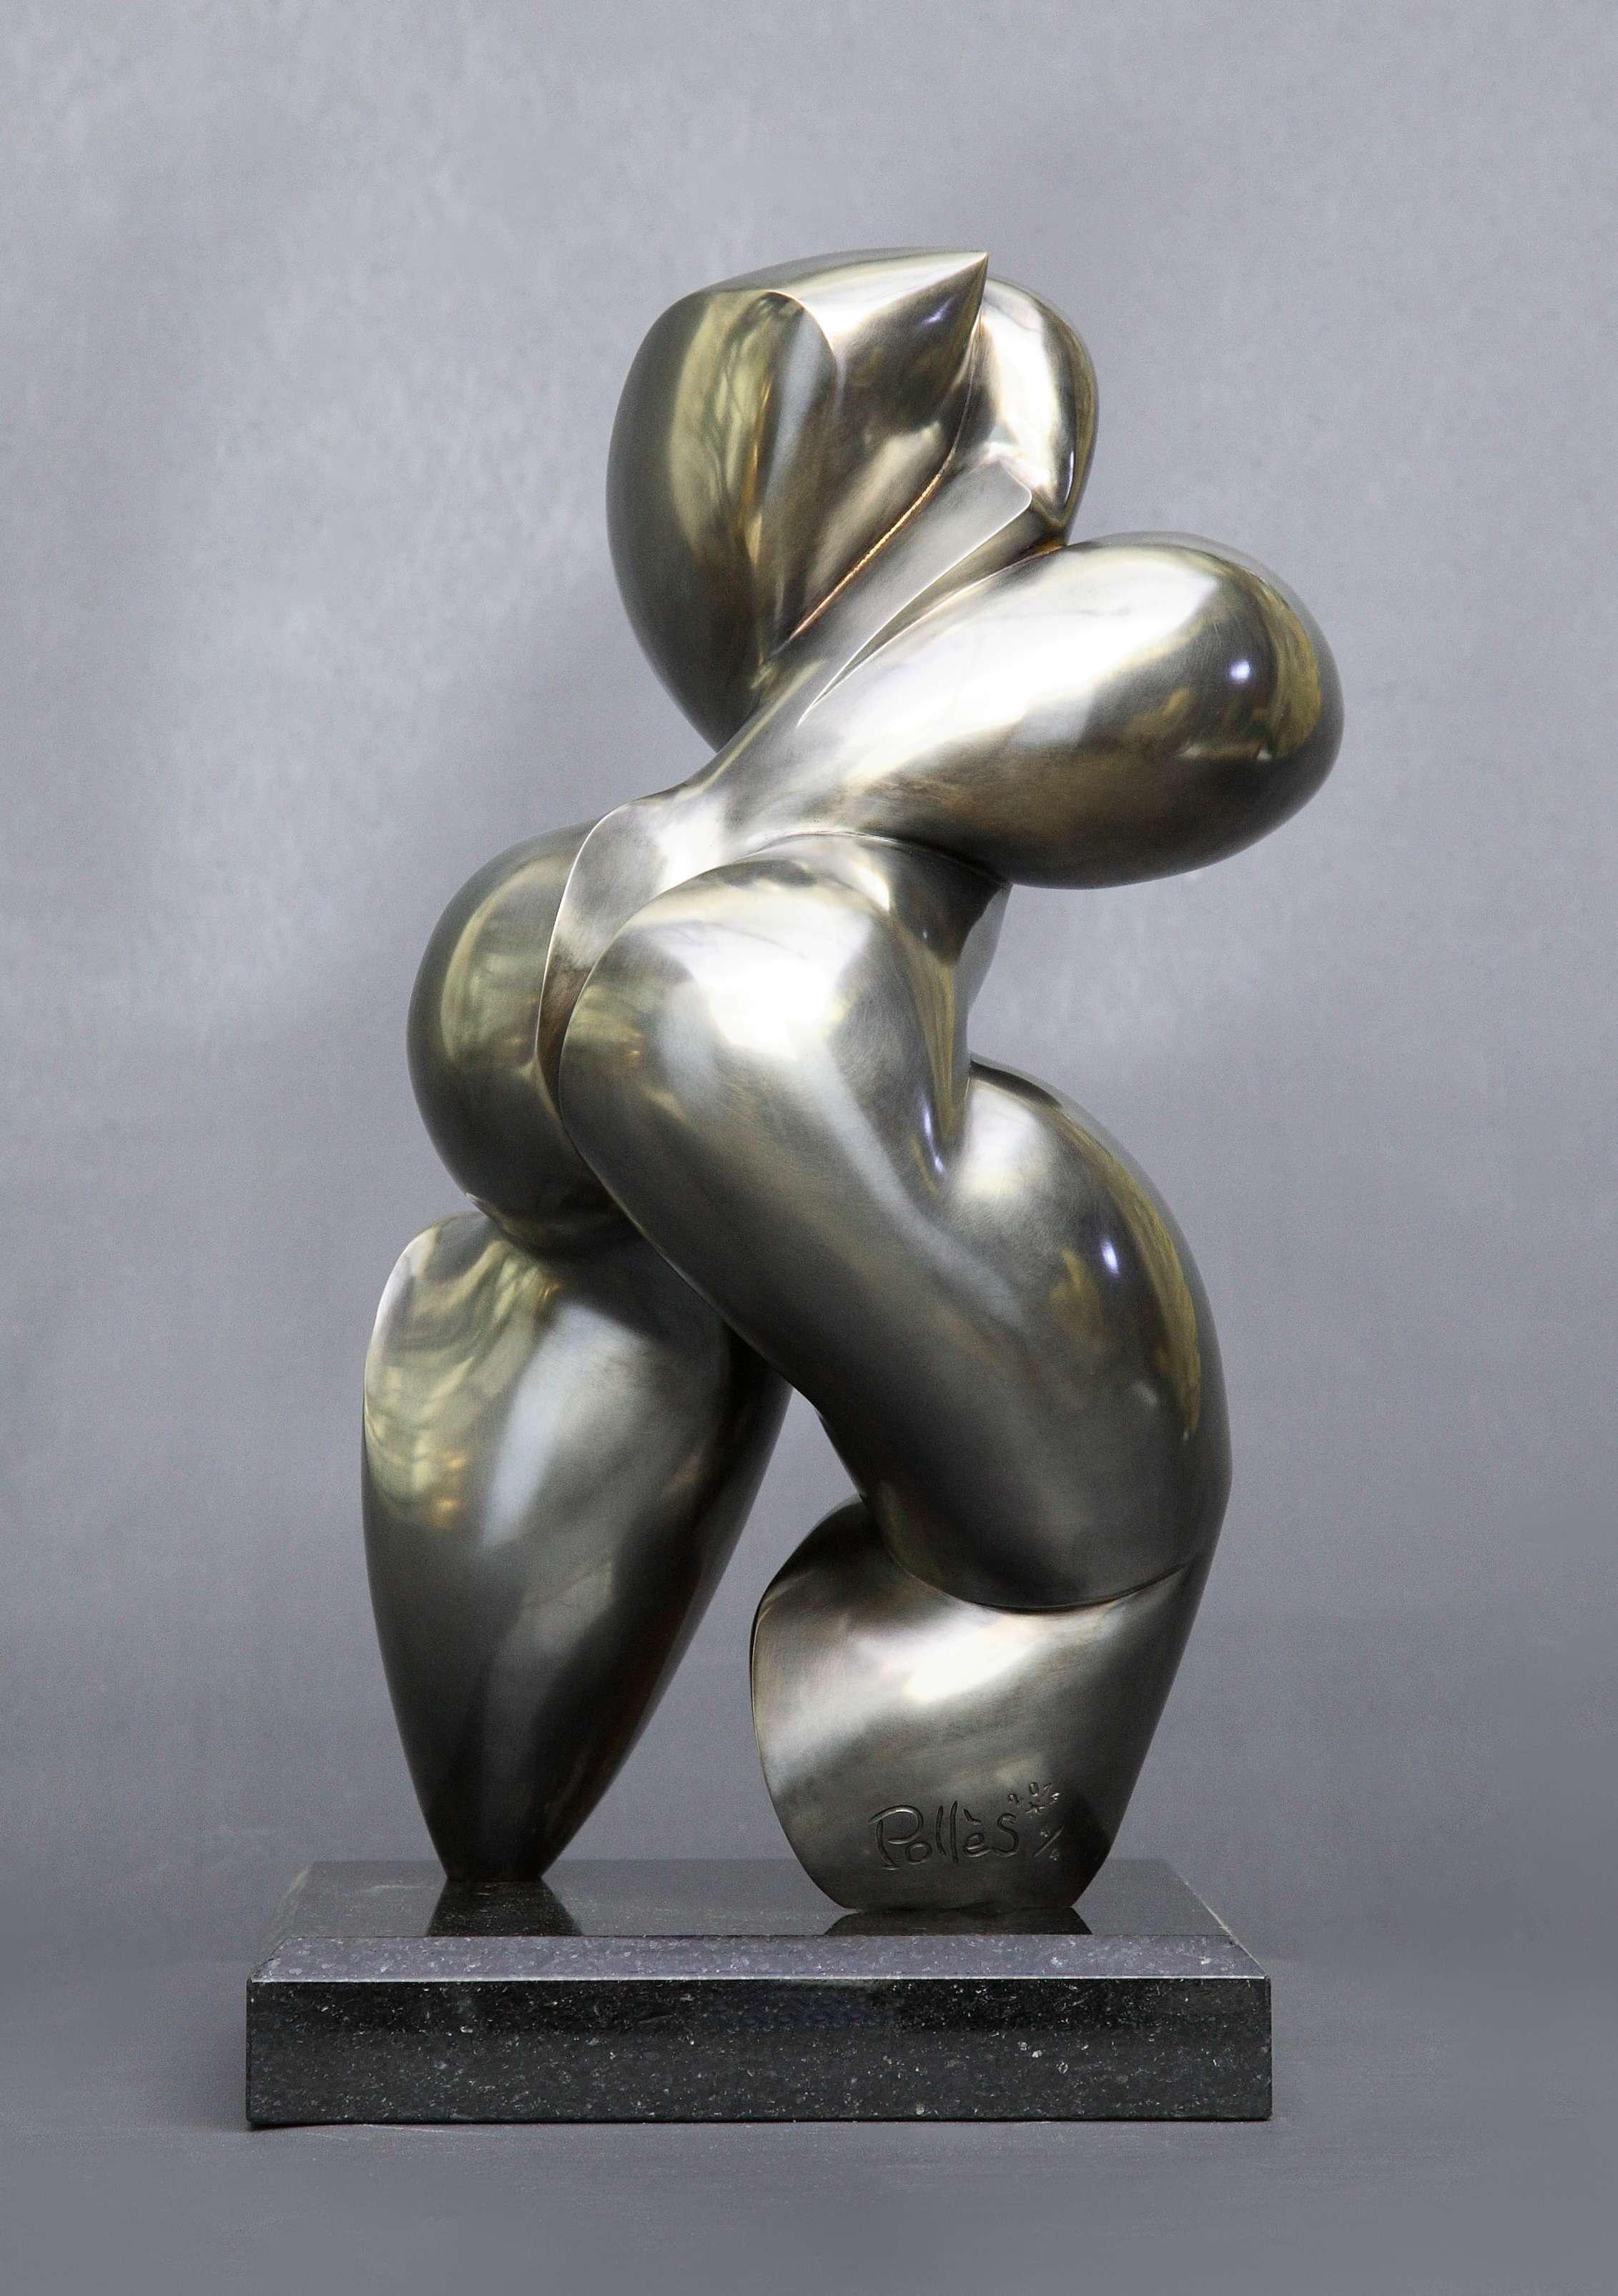 Pollès - Bronze-Skulptur - Schweppsy
Bronze
4/4
Erstellt im Jahr 2010, gecastet im Jahr 2014
42 x 22 x 20 cm
Signiert und nummeriert

BIOGRAPHIE
Pollès wurde 1945 in Paris geboren
Wie Leonard de Vinci auf der Suche nach anatomischer Perfektion, nach